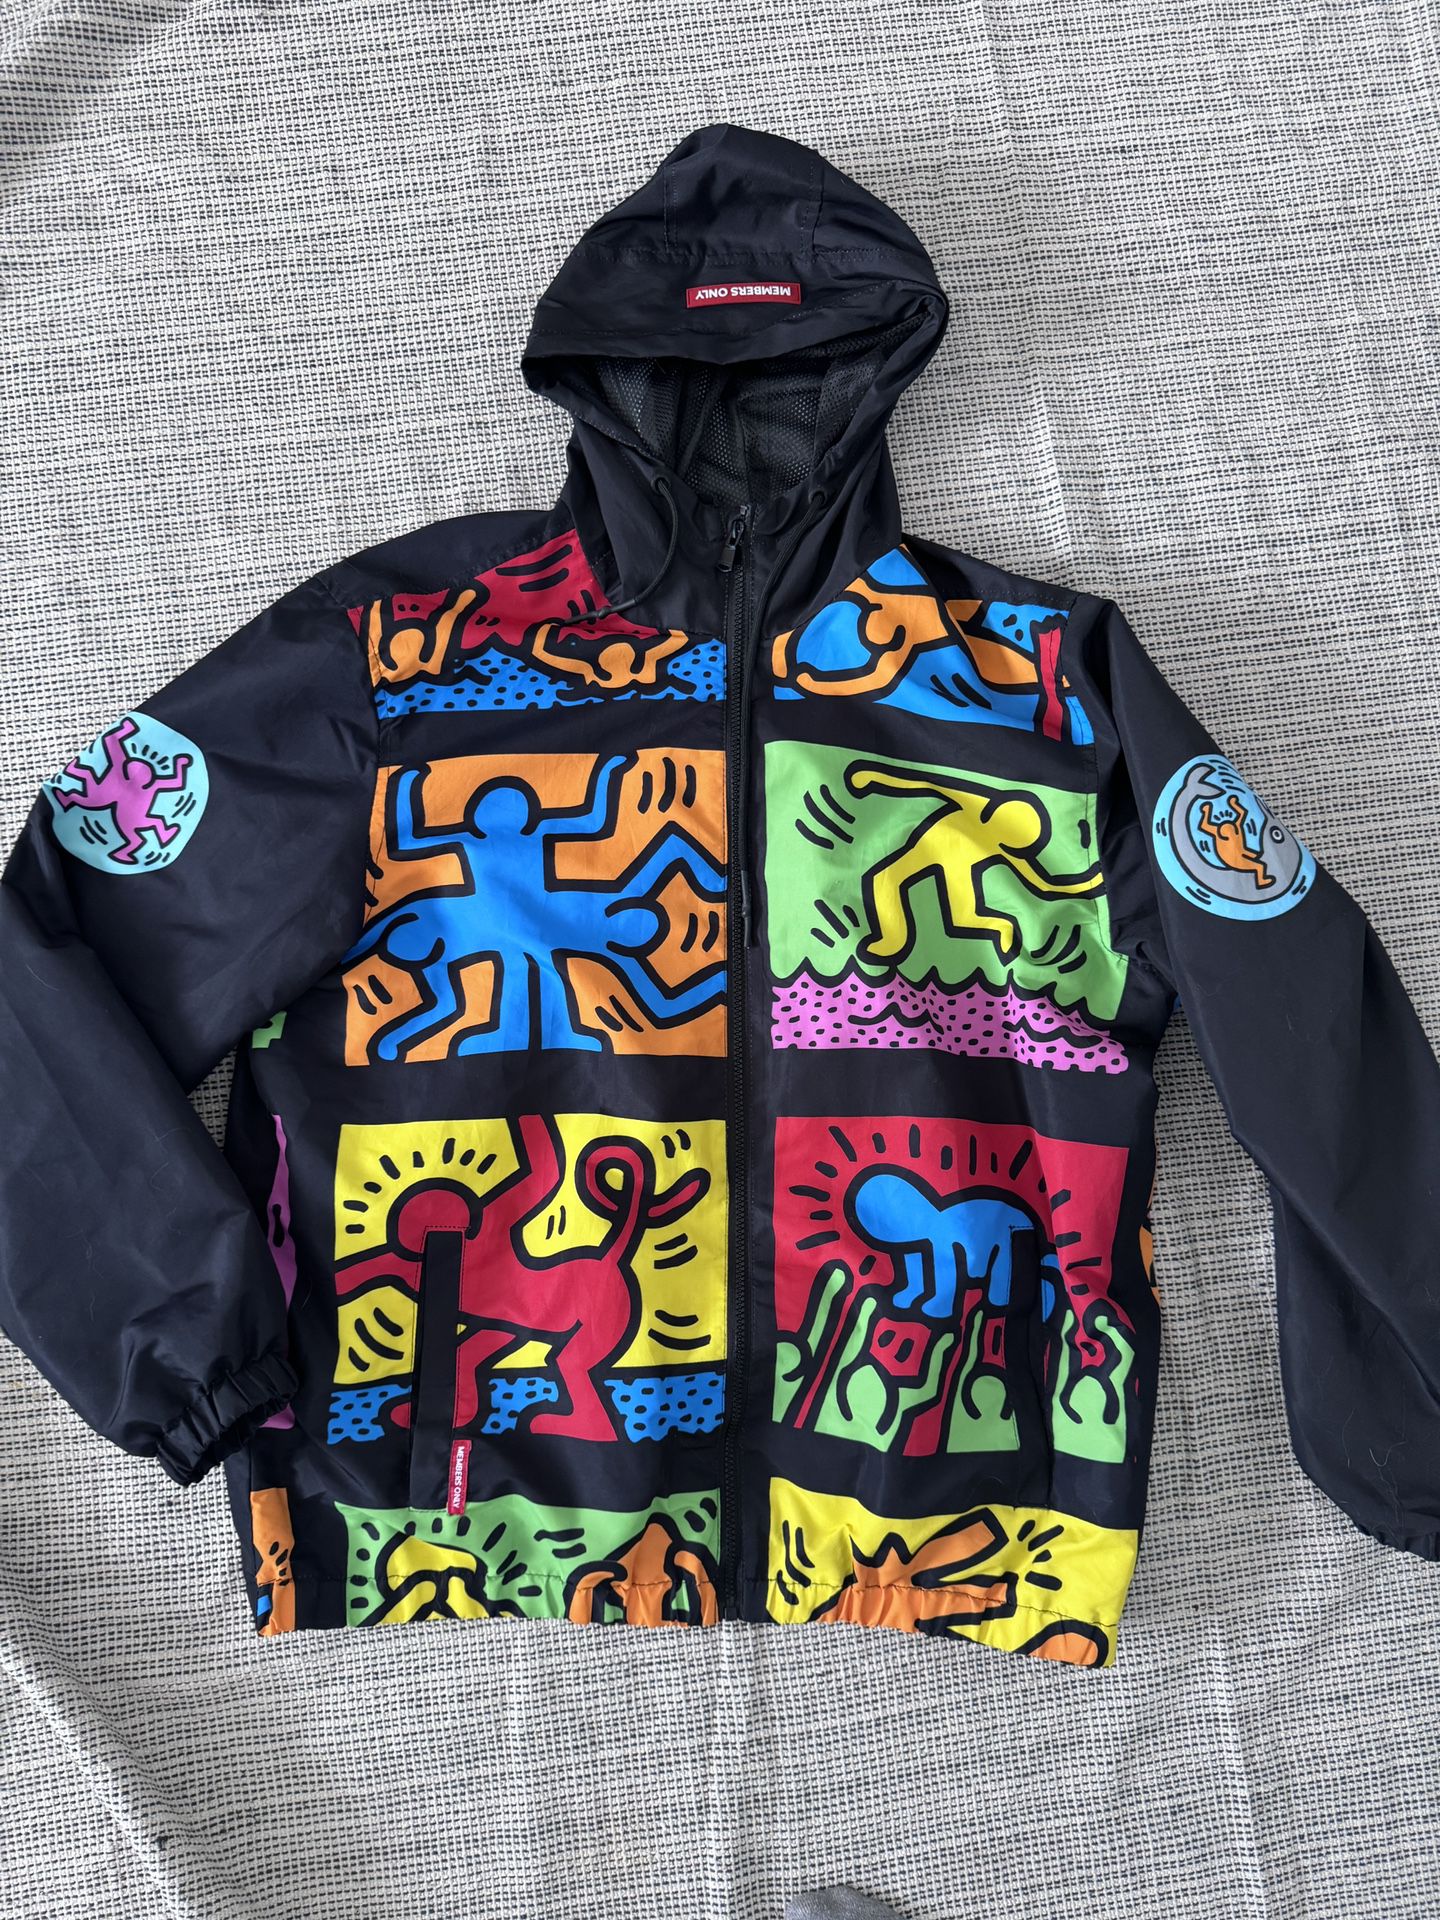 Keith Haring Members Only Full Zip Windbreaker Jacket XL